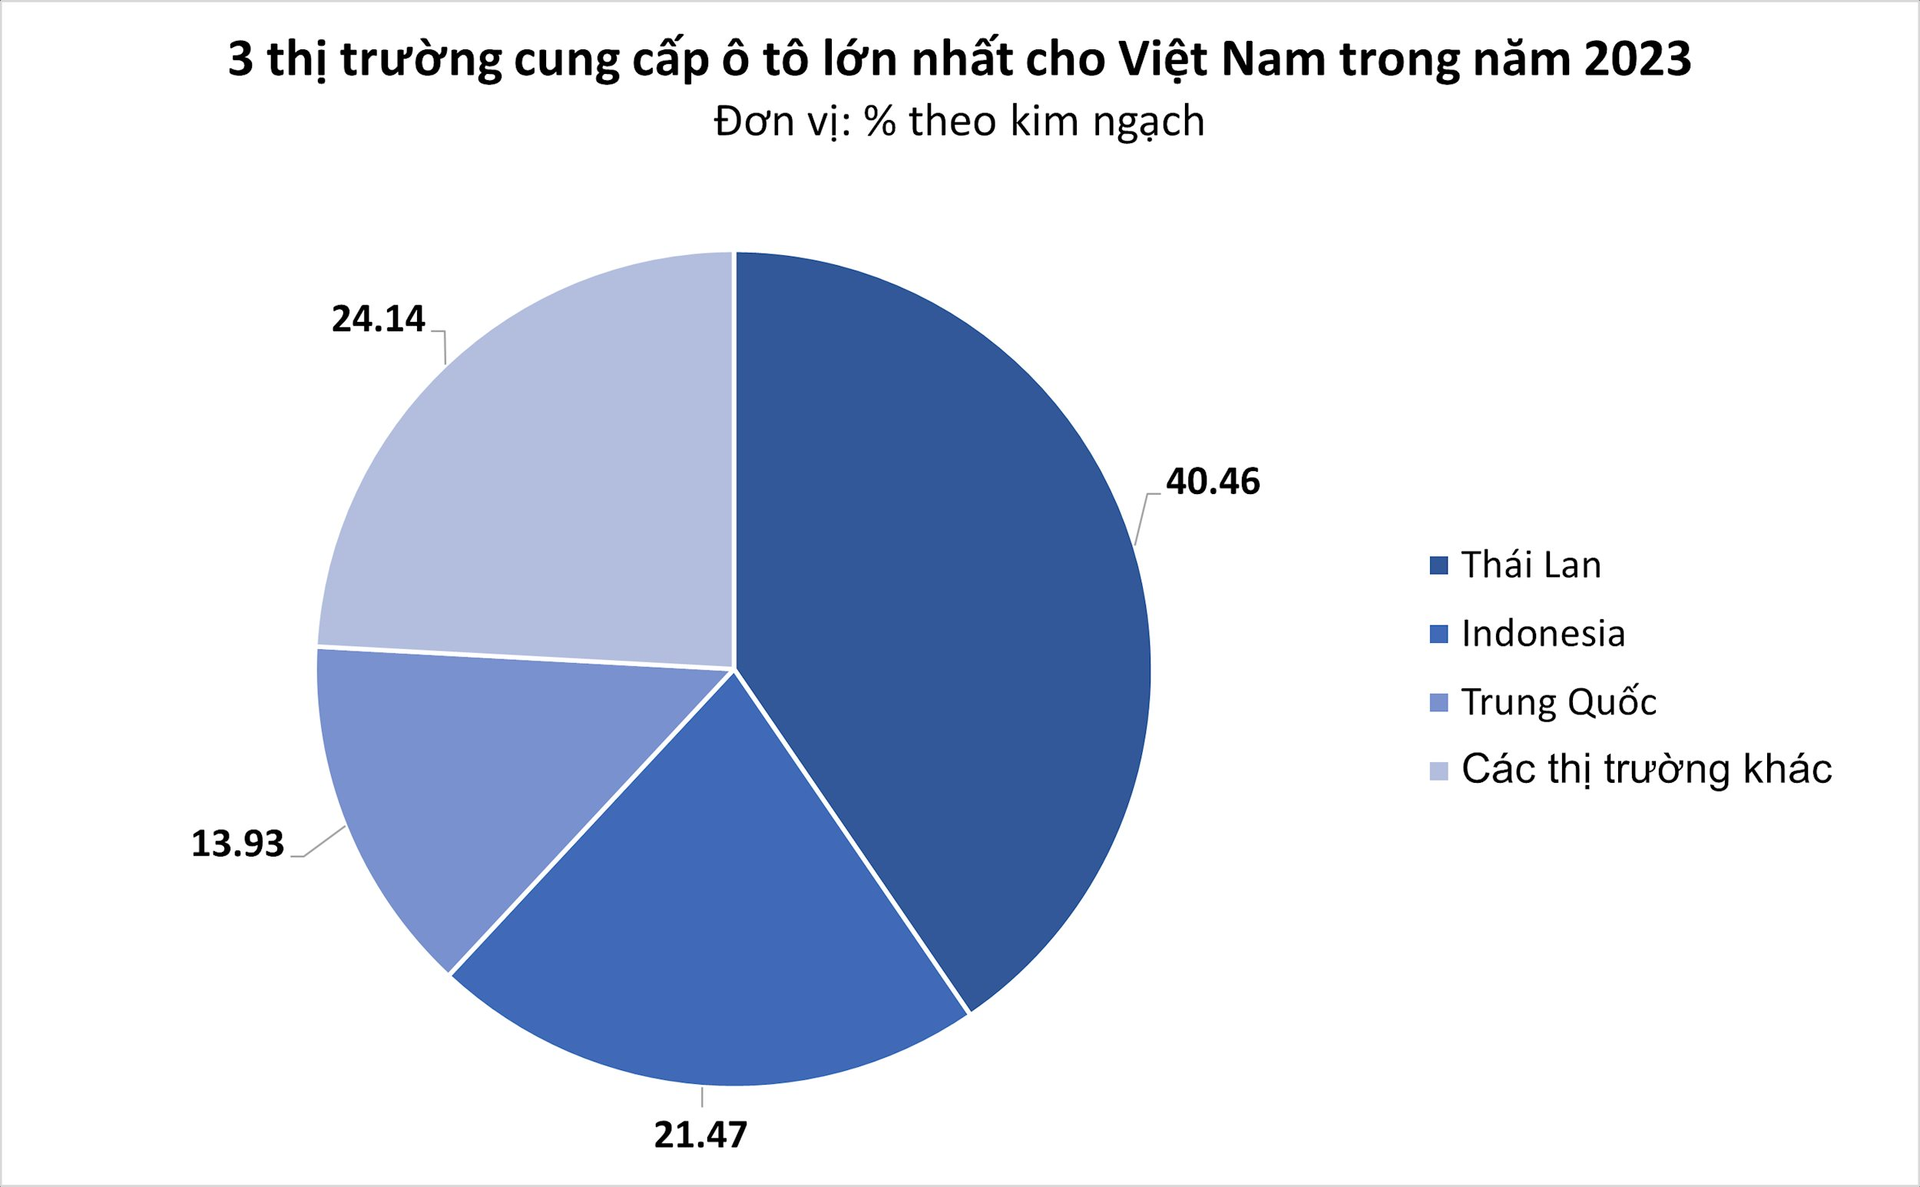 Giá rẻ cùng thuế nhập khẩu 0%, ô tô Thái Lan ồ ạt đổ bộ Việt Nam trong năm 2023 - Ảnh 1.